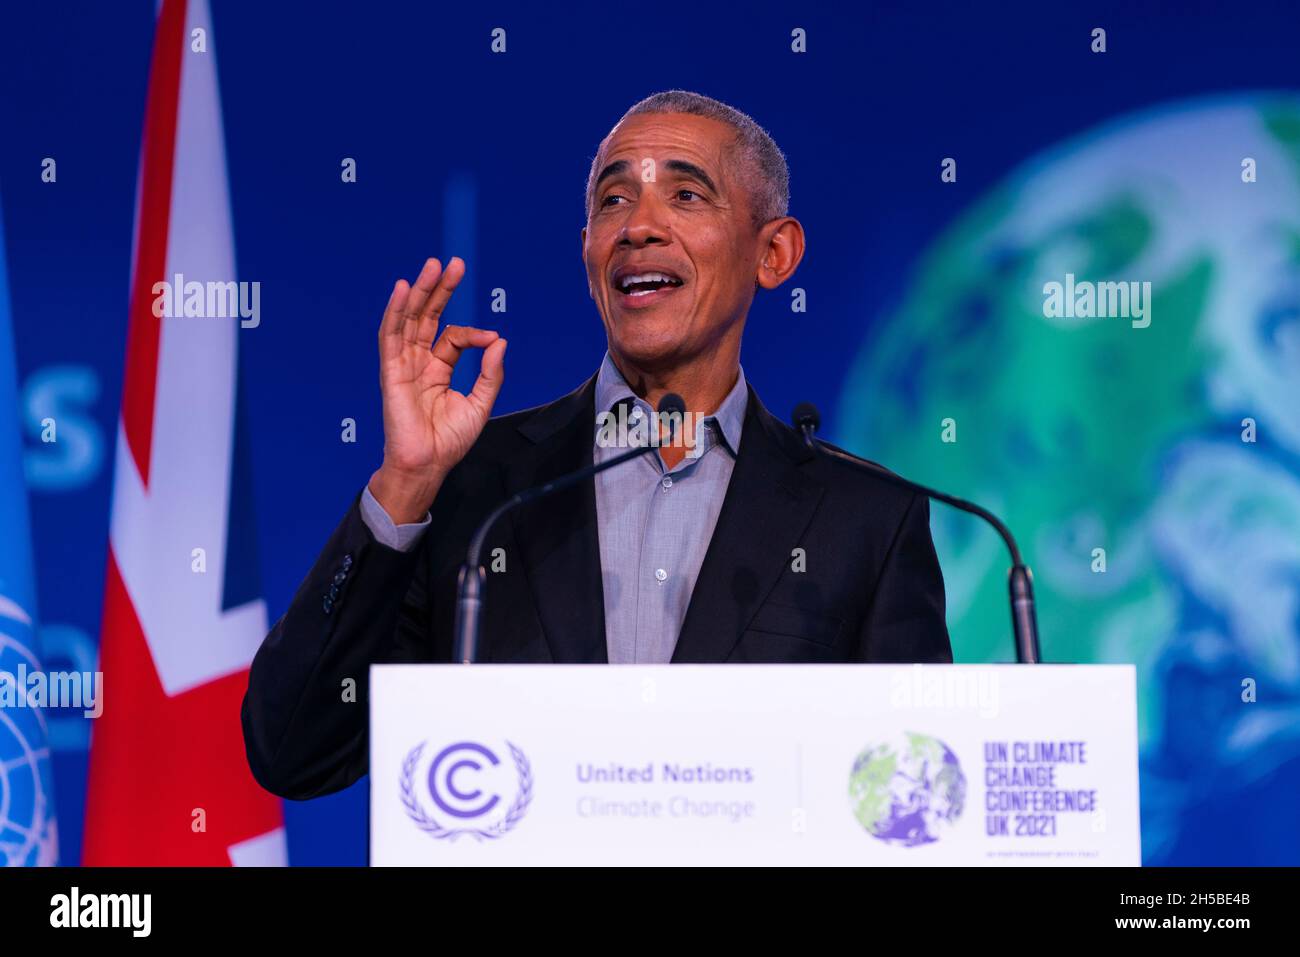 Glasgow, Schottland, Großbritannien. November 2021. Der ehemalige US-Präsident Barack Obama hält heute eine Rede vor den Delegierten auf der UN-Klimakonferenz COP26 in Glasgow. Iain Masterton/Alamy Live News. Stockfoto